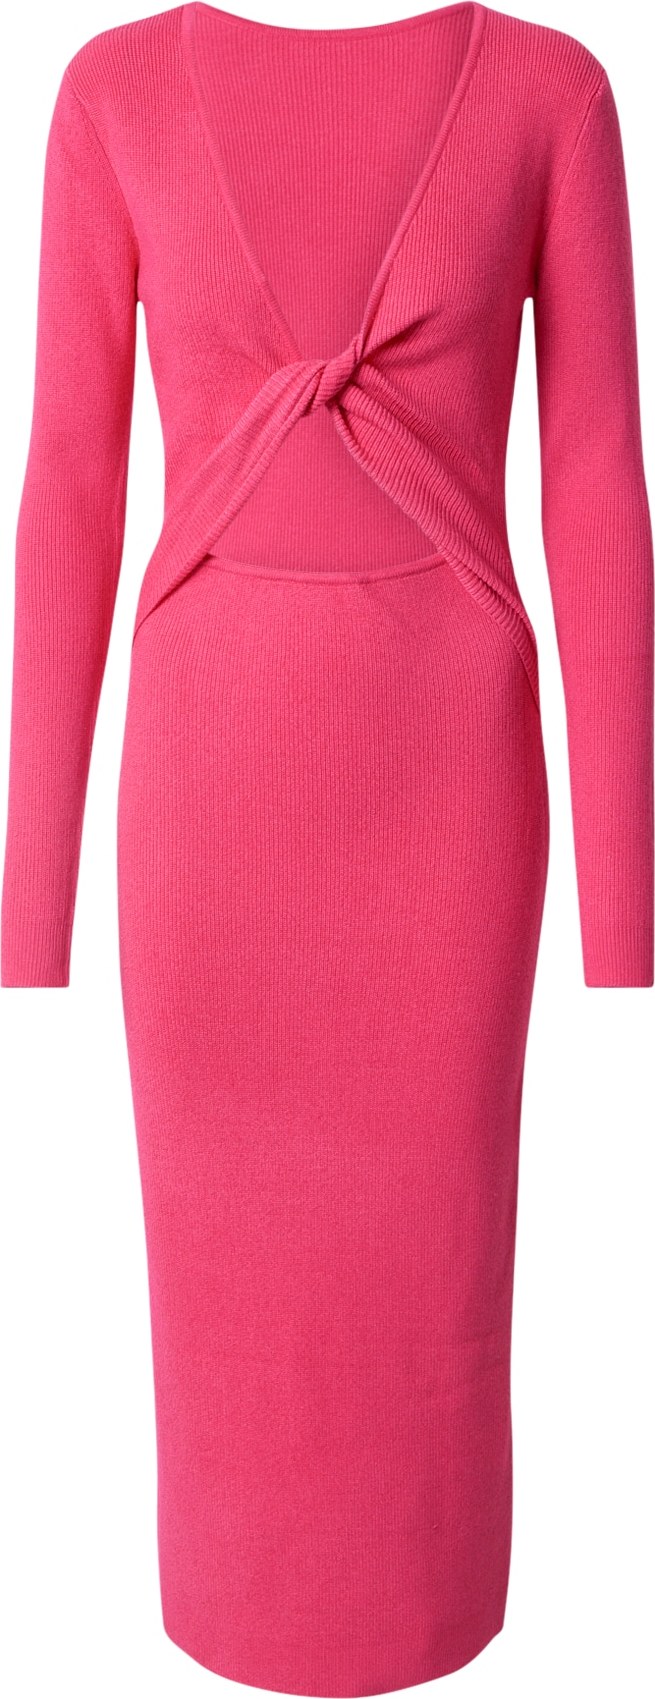 BZR Úpletové šaty 'Lela Jenner' pink